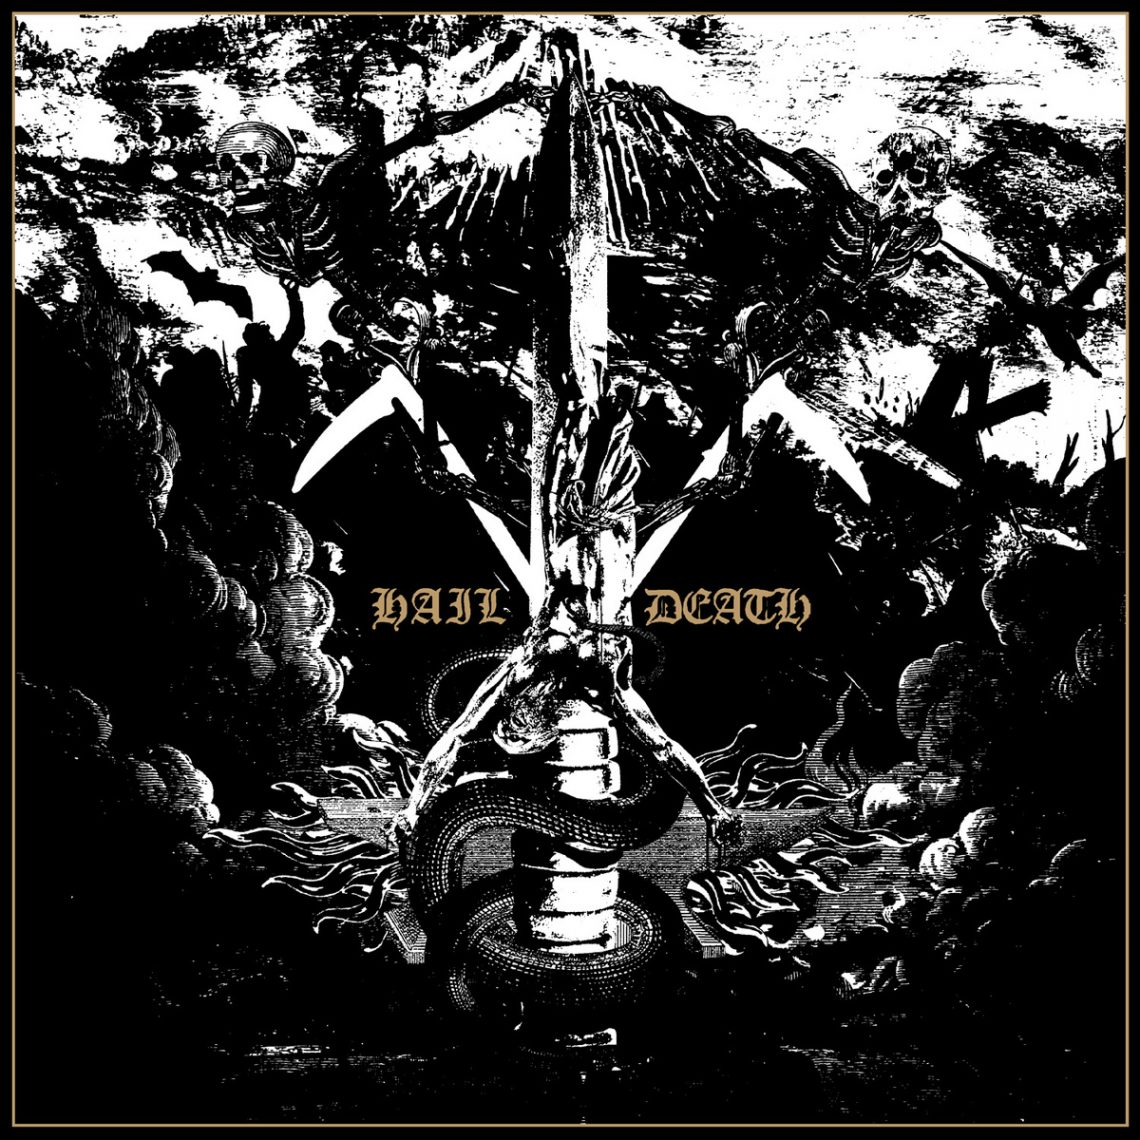 Black Anvil – Hail Death